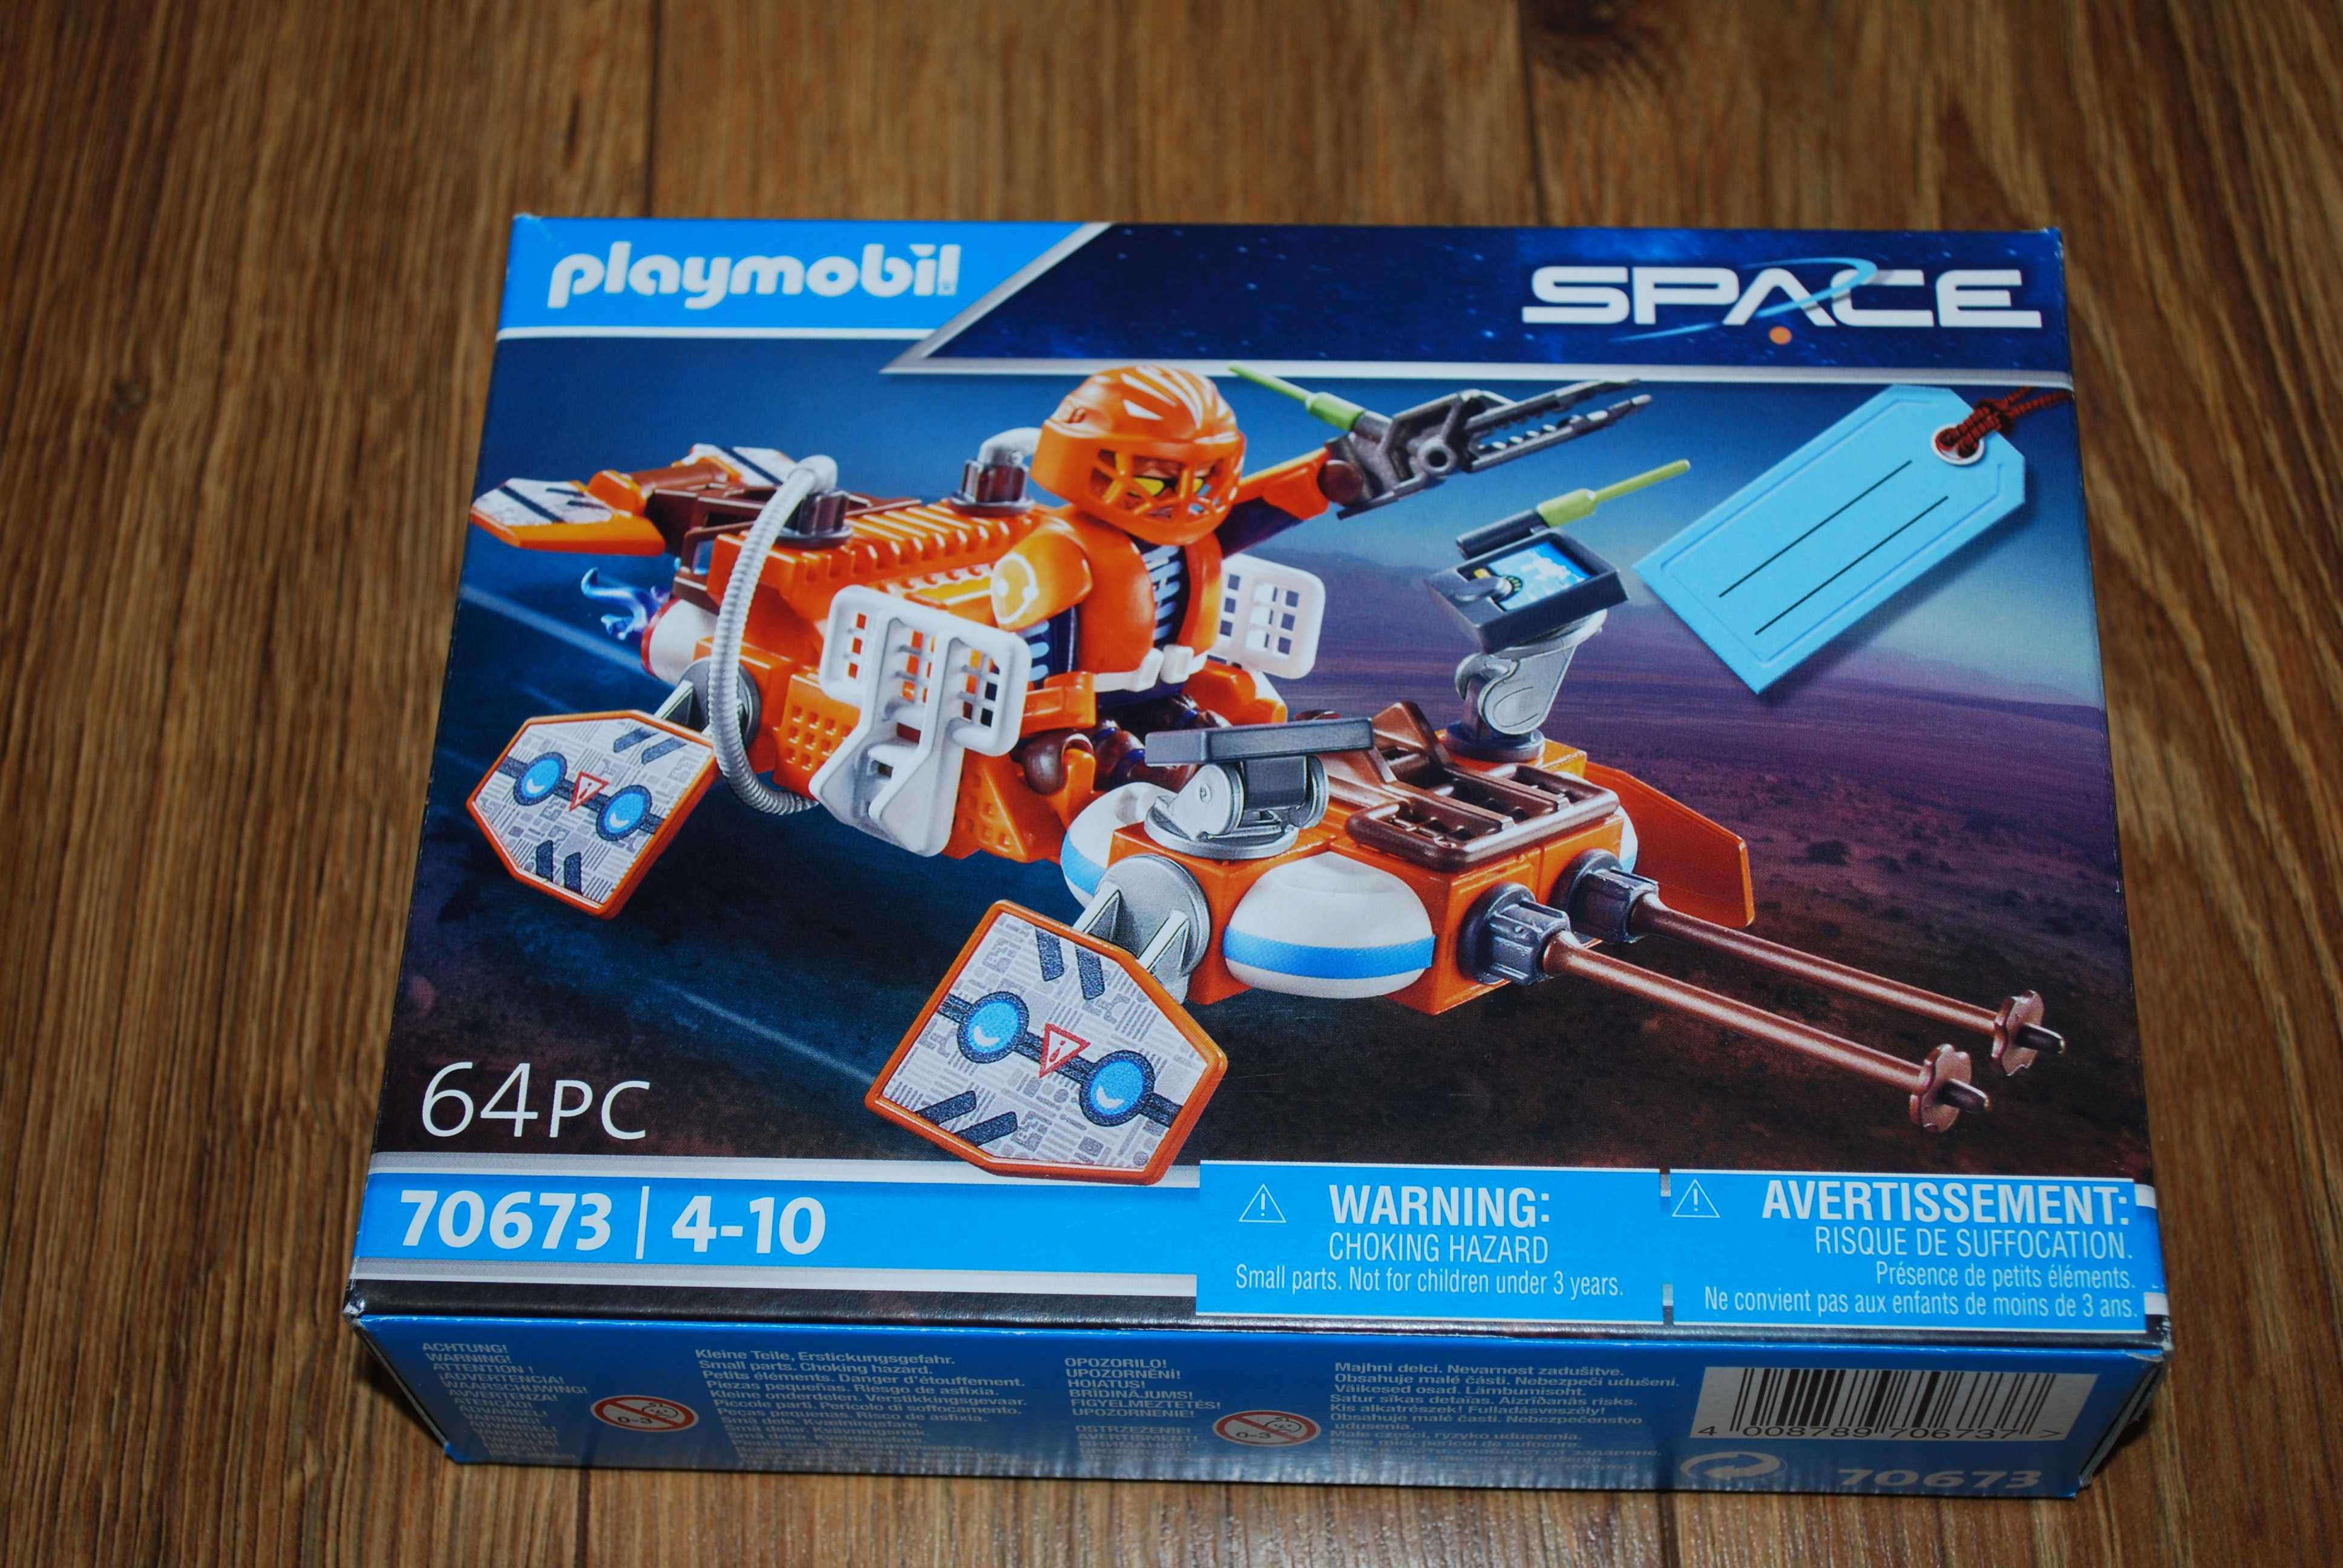 Playmobil  Space kosmos - zestaw upominkowy